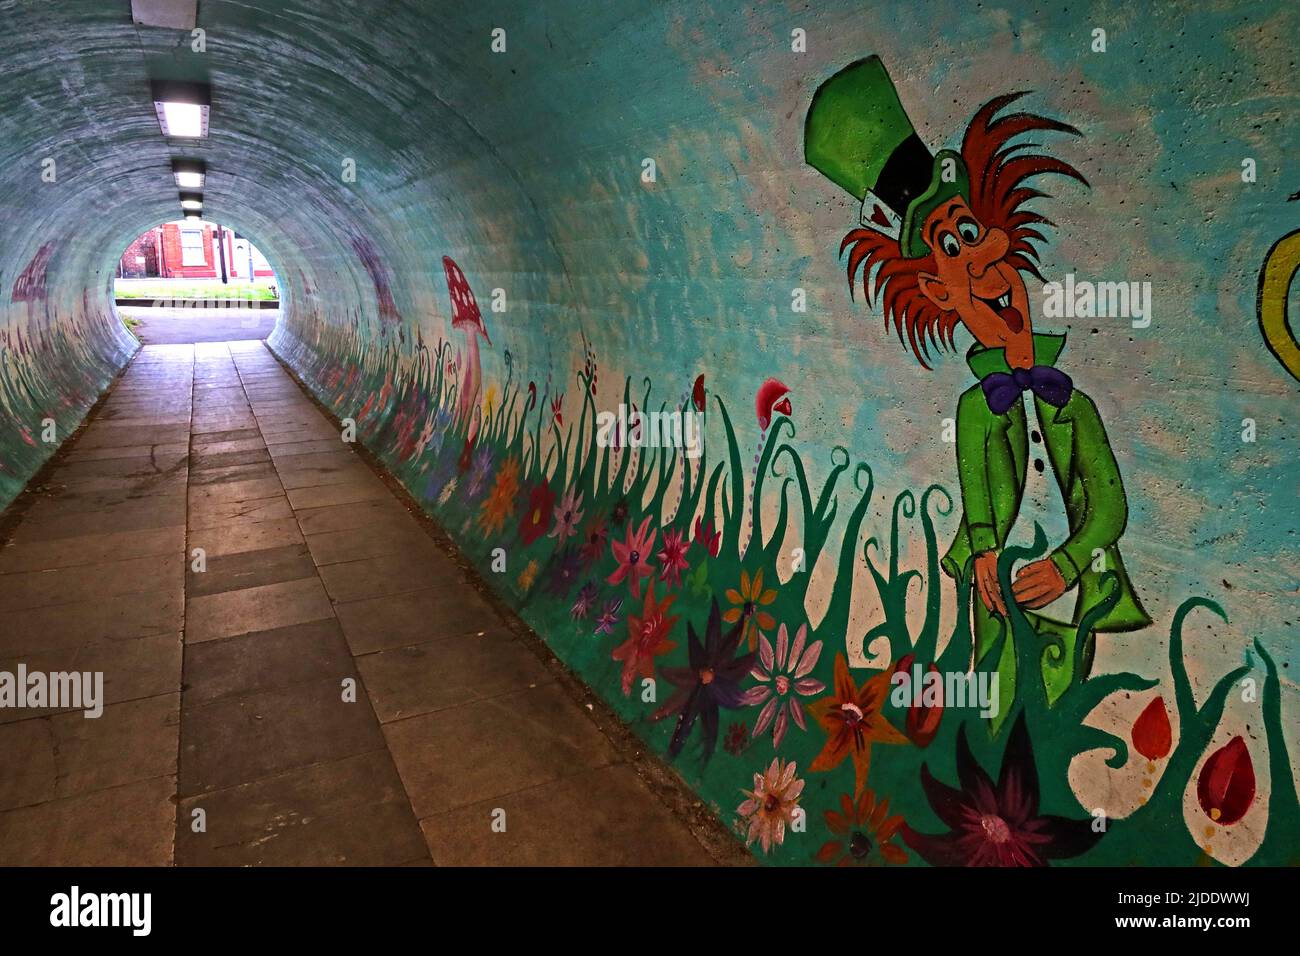 Der verrückte Hutmacher aus Alice im Wunderland, Lewis Carroll Figur gemalt in Latchford Fußgängertunnel, Knutsford Rd, Warrington, WA4 1JR Stockfoto